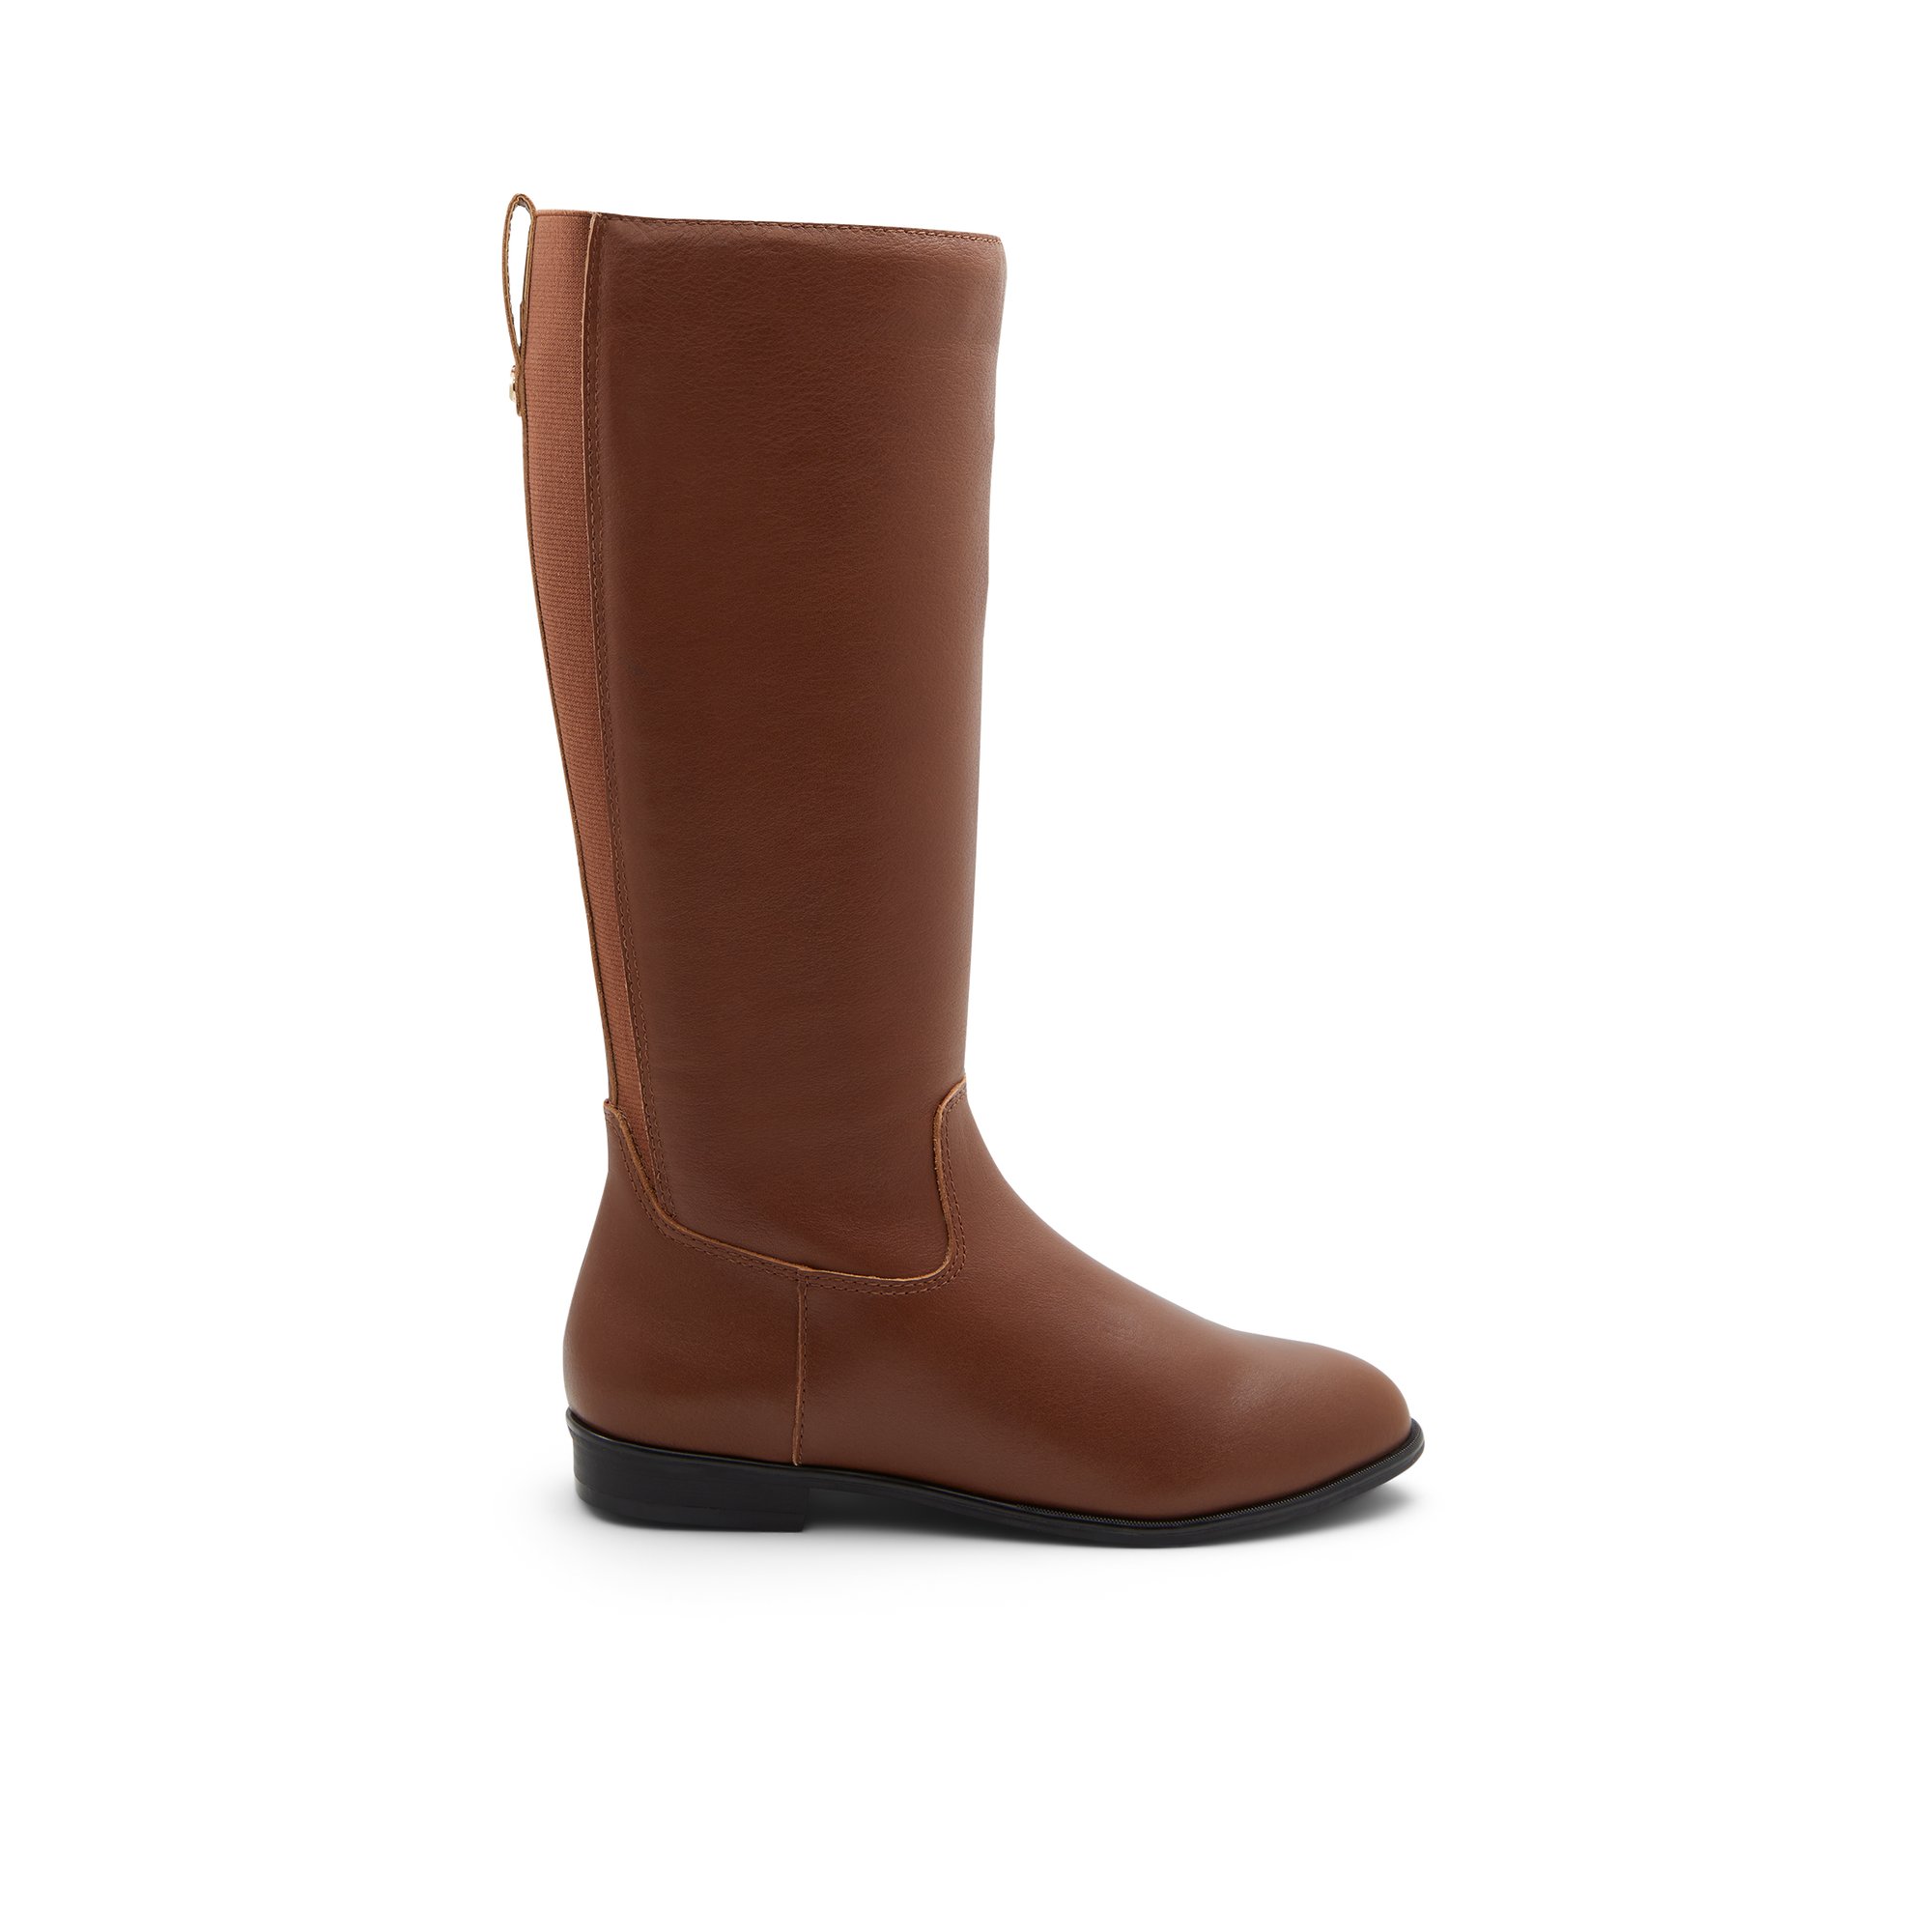 ALDO Riraven - Women's Boots Casual - Brown